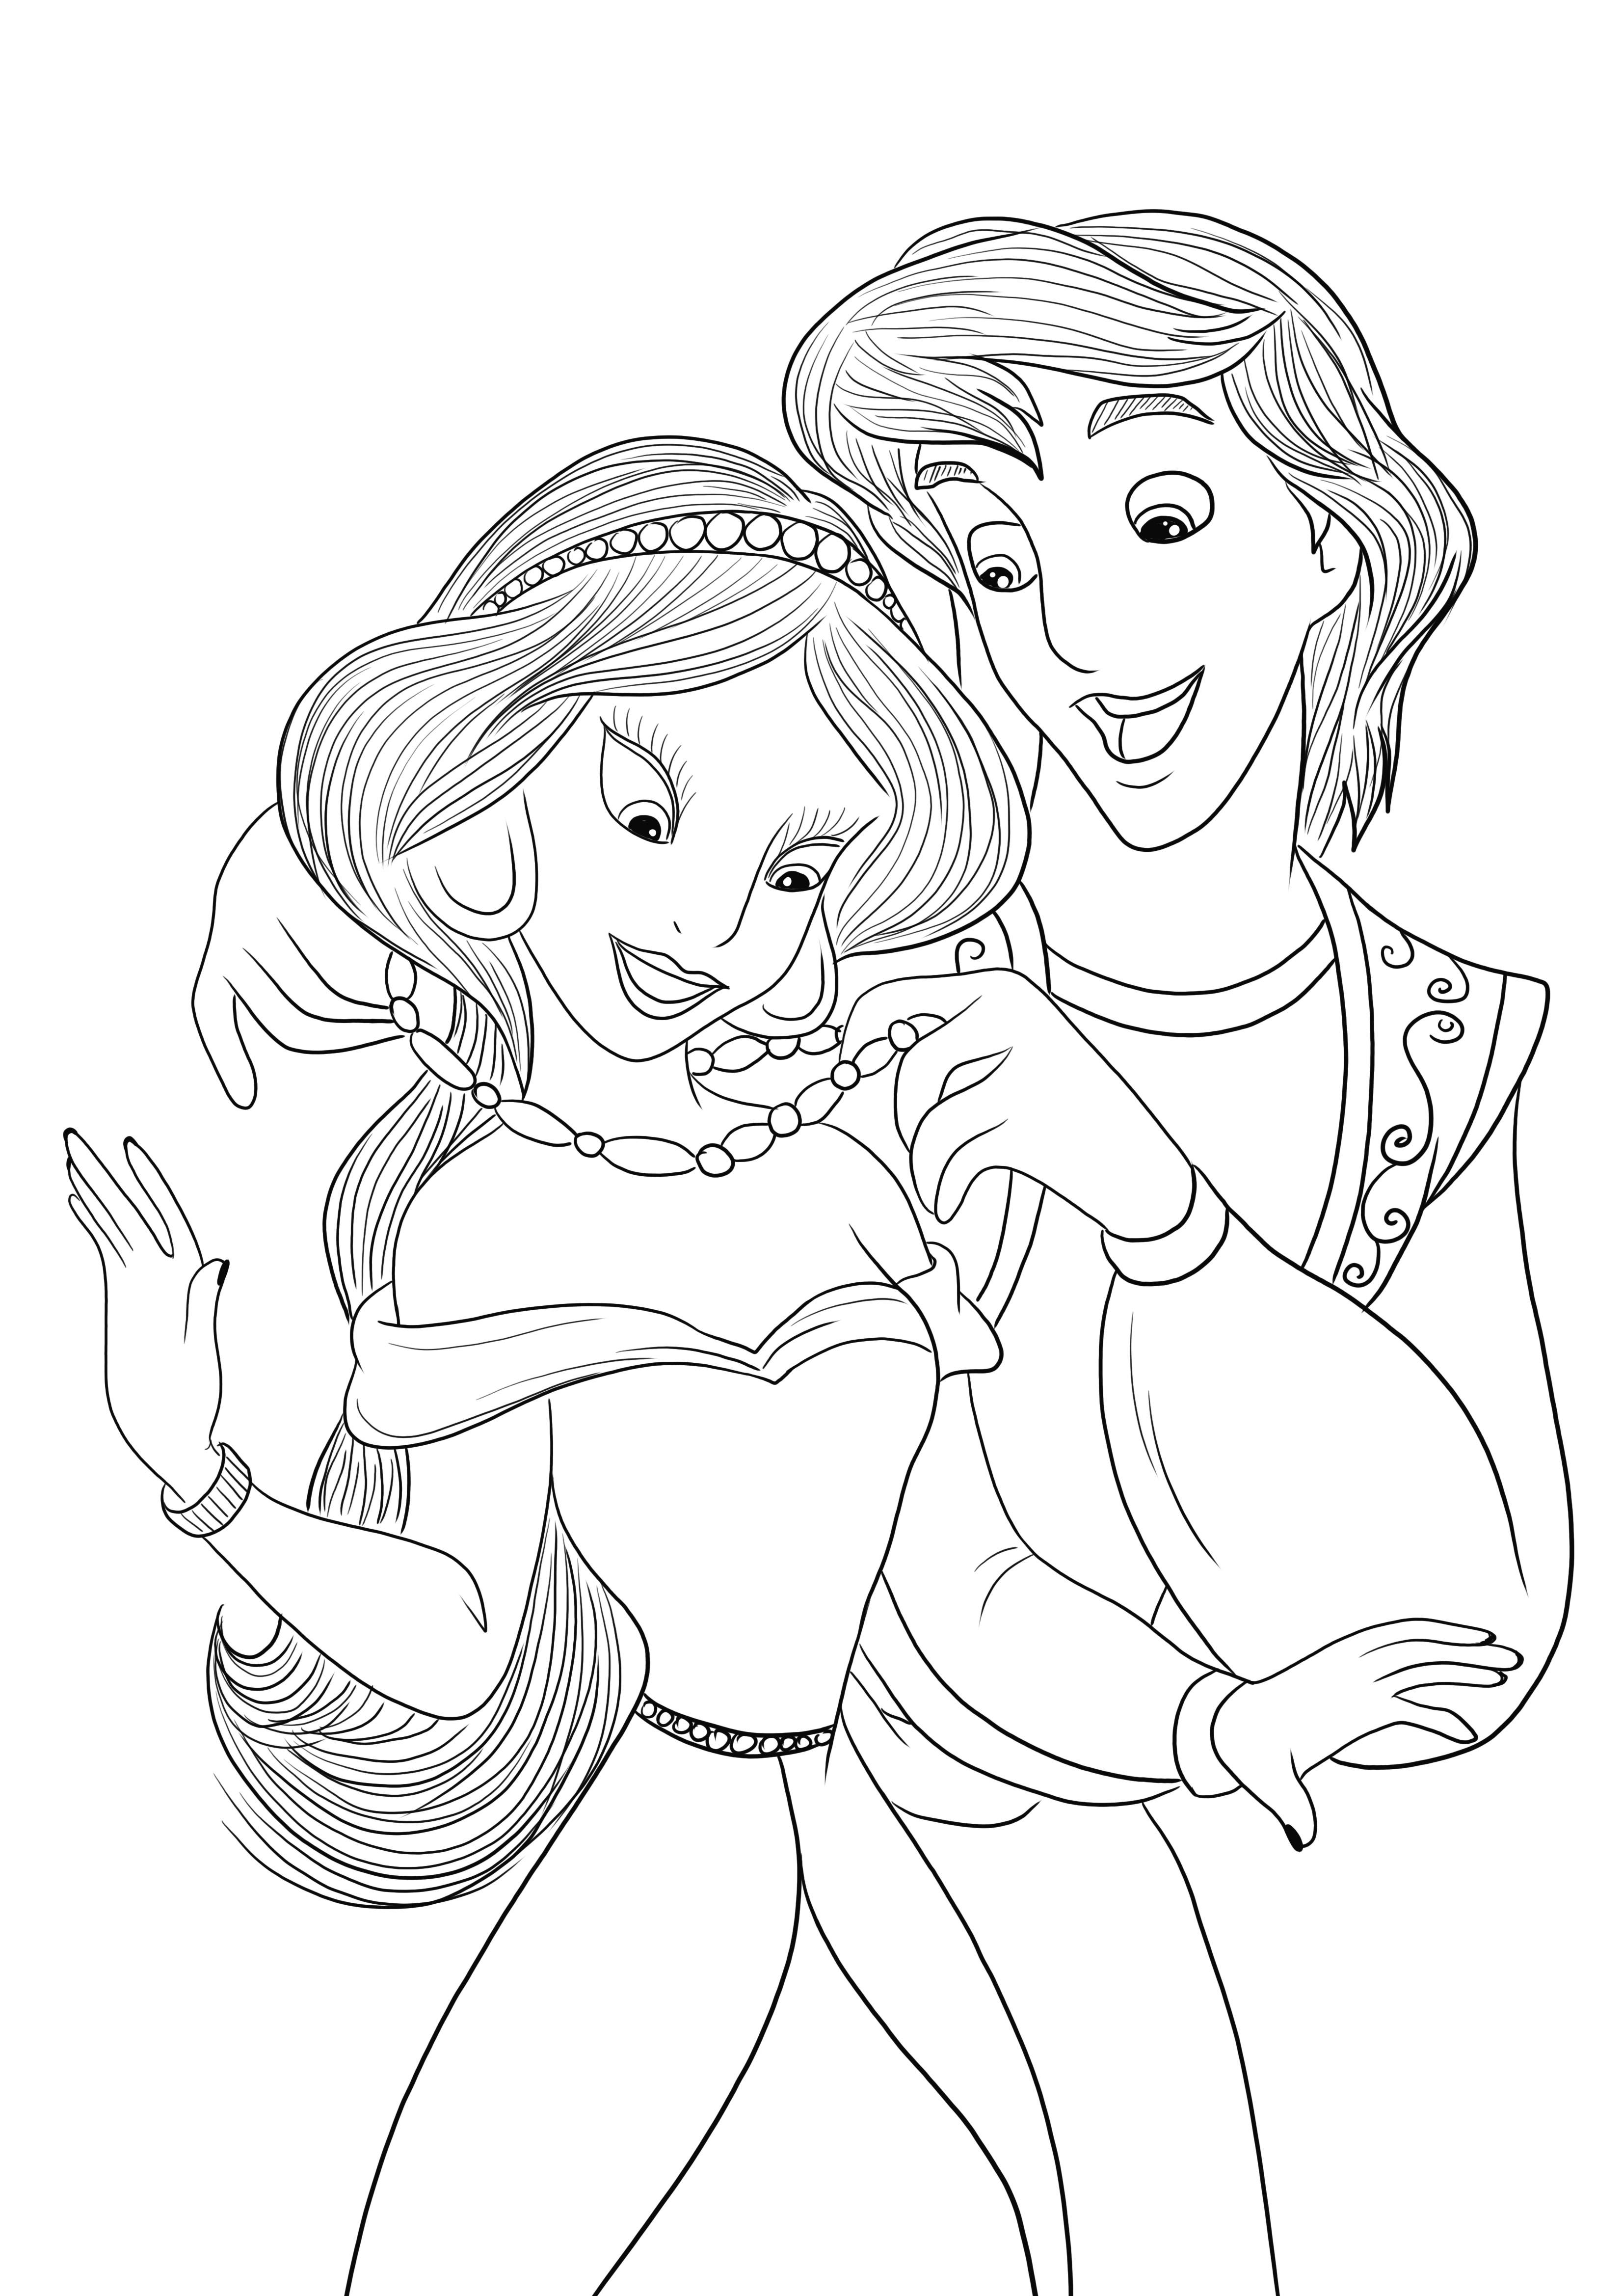 Descarga gratuita de imagen para colorear de Aladino y Jasmine para que los niños coloreen